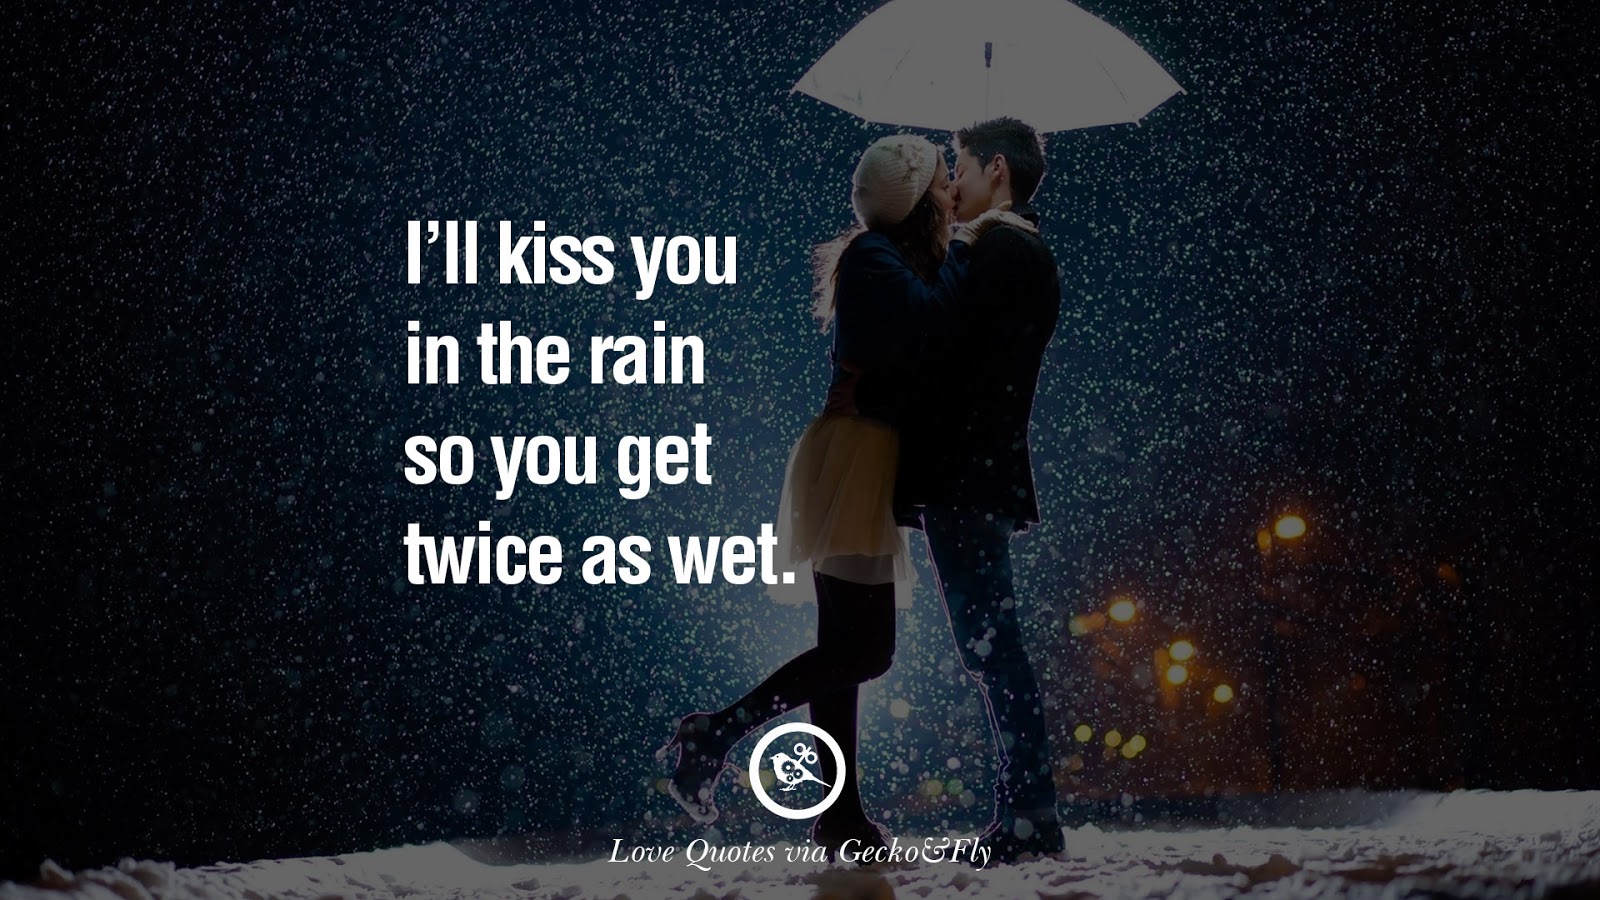 Another love rain. Love quotes. November Rain обои. Love Rain Samsung обои. Munchener-Freiheit-Romancing-in-the-Dark.